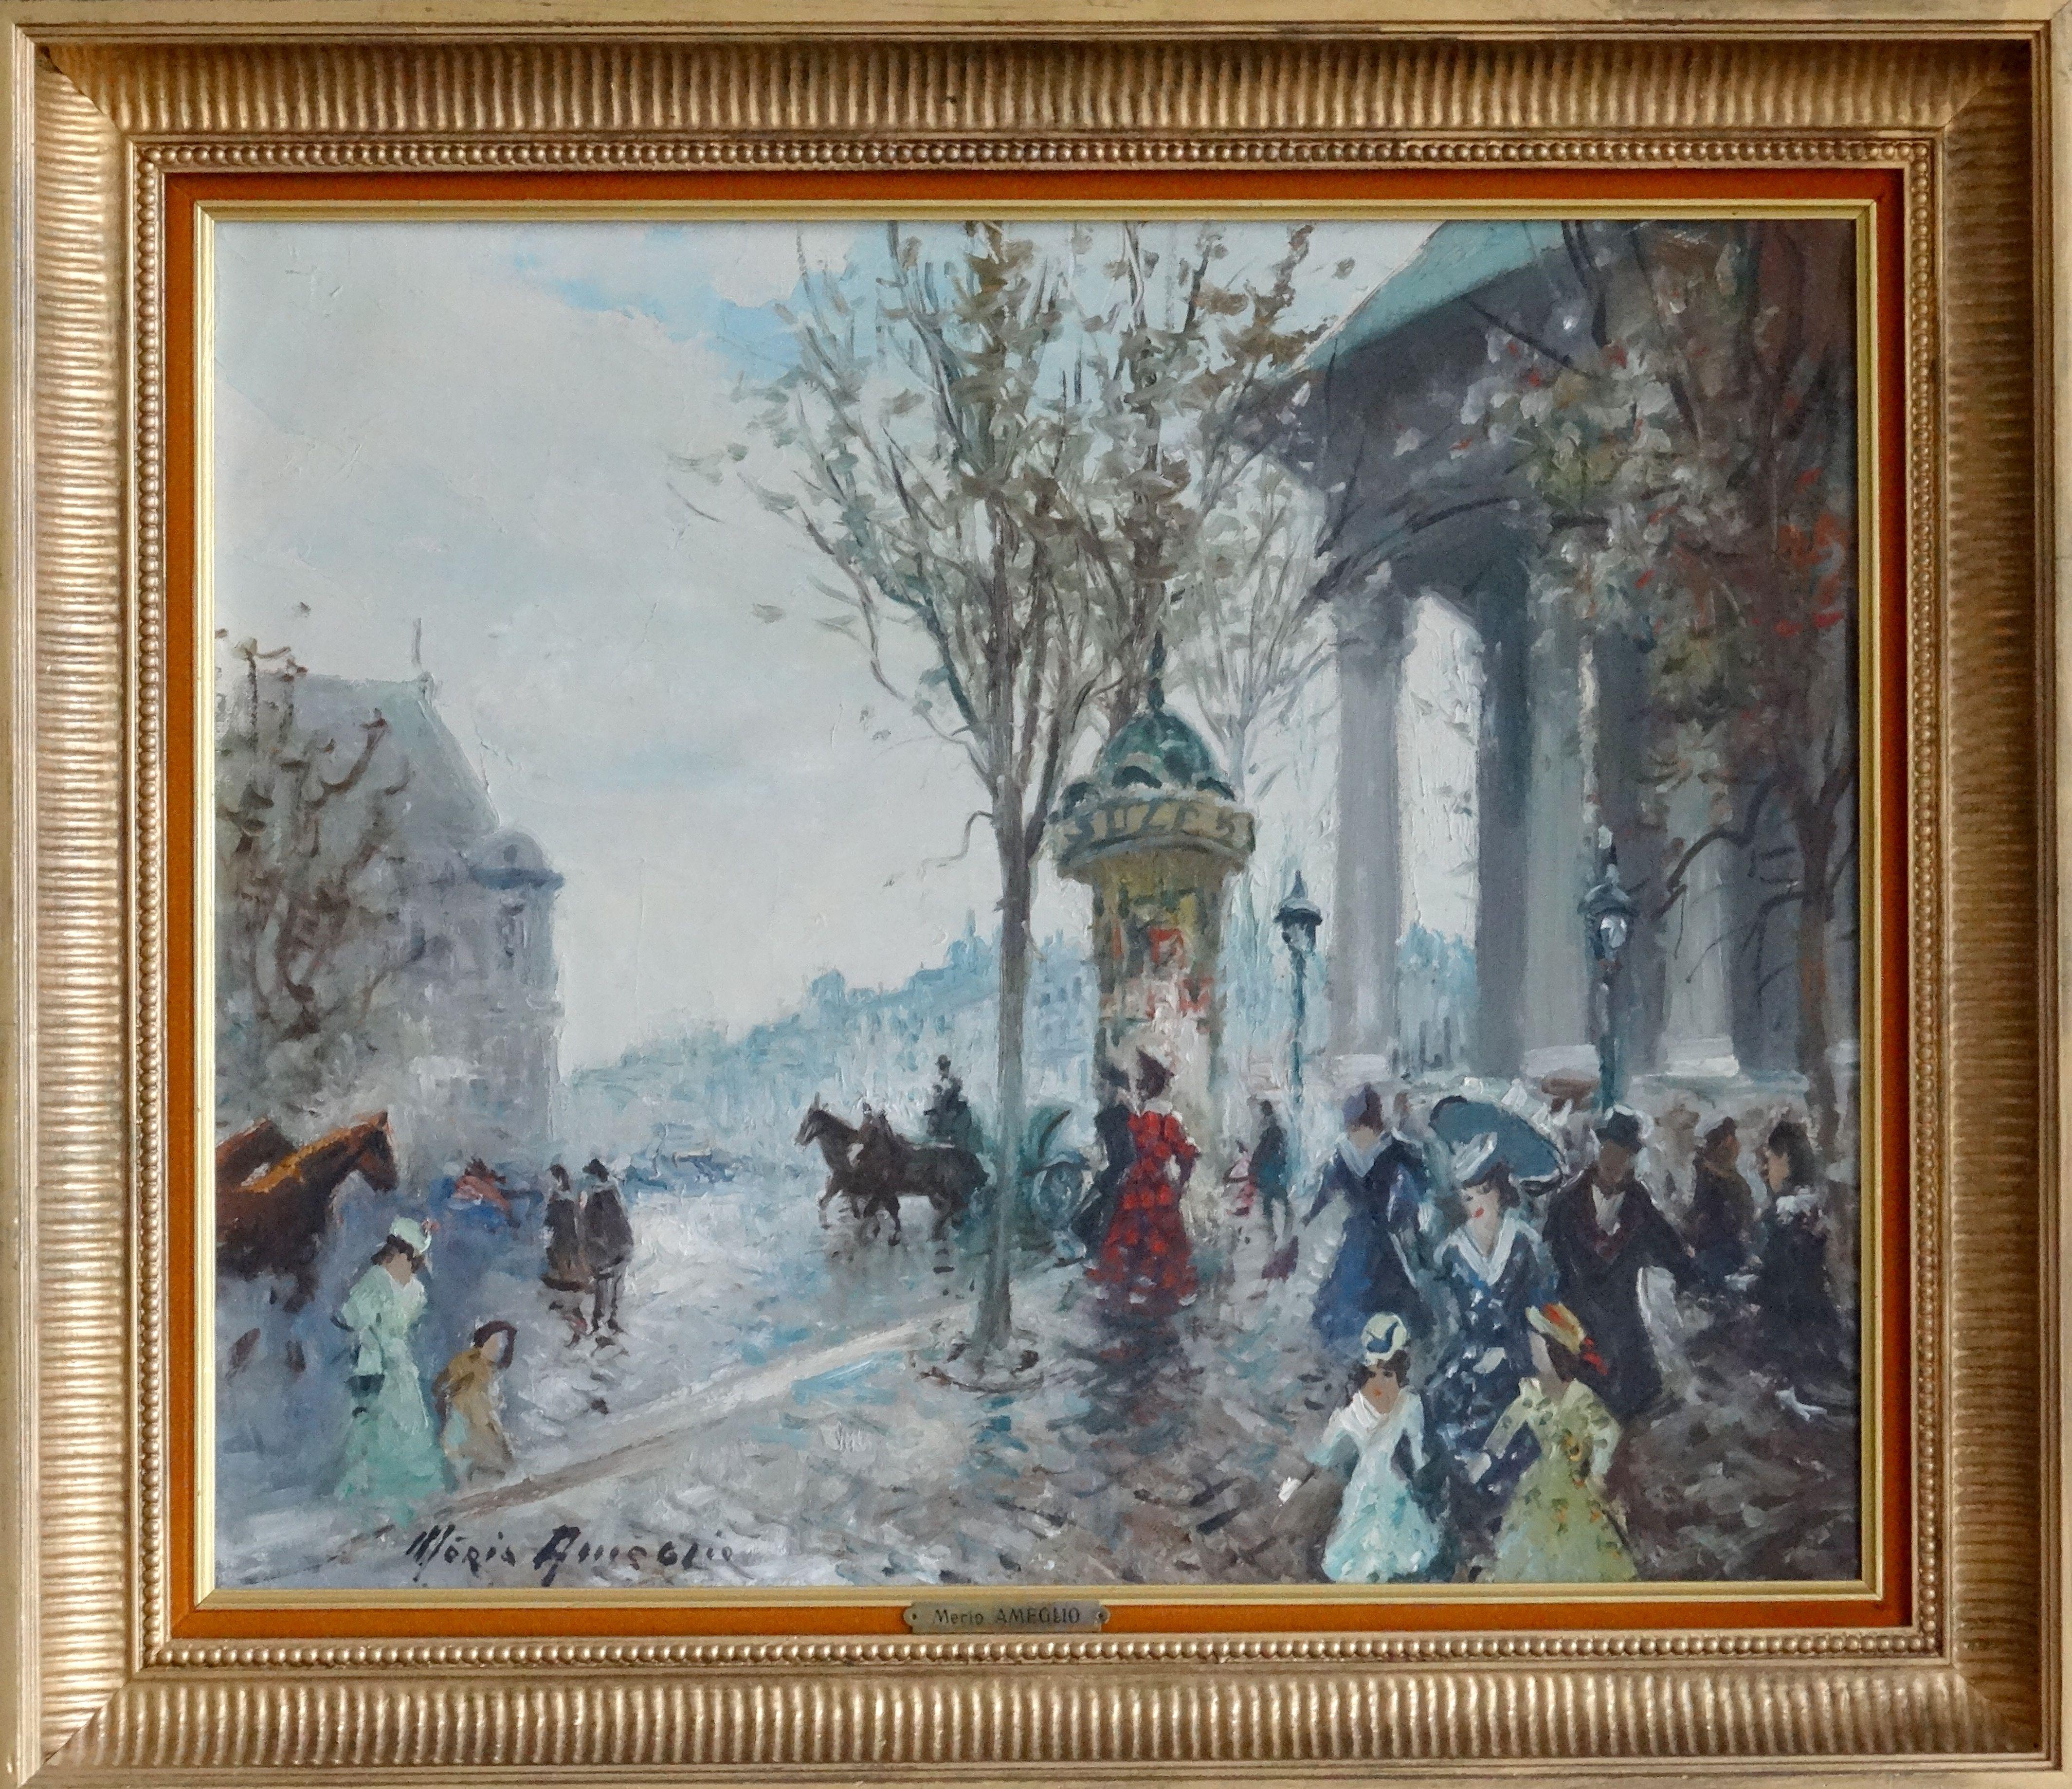 Paris, place de la Madeleine. 1955, oil on canvas, 46x55 cm - Painting by Merio Ameglio